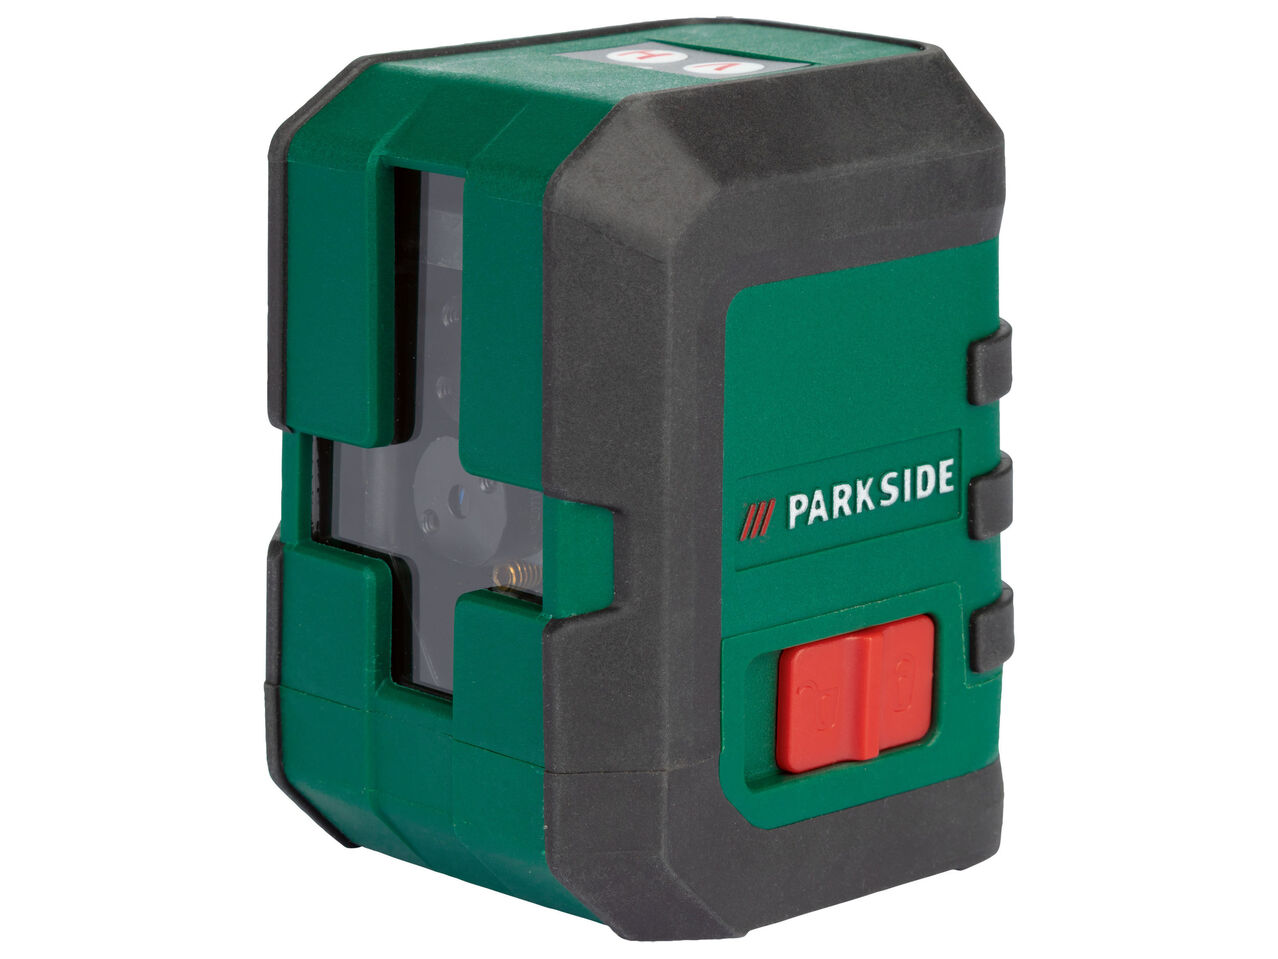 PARKSIDE® Laser krzyżowy ze statywem , cena 119 PLN 

- regulowana głowica ...